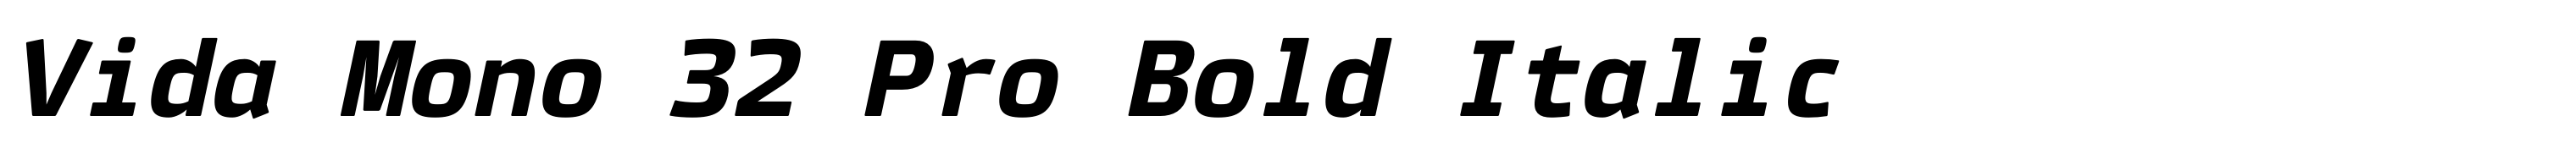 Vida Mono 32 Pro Bold Italic